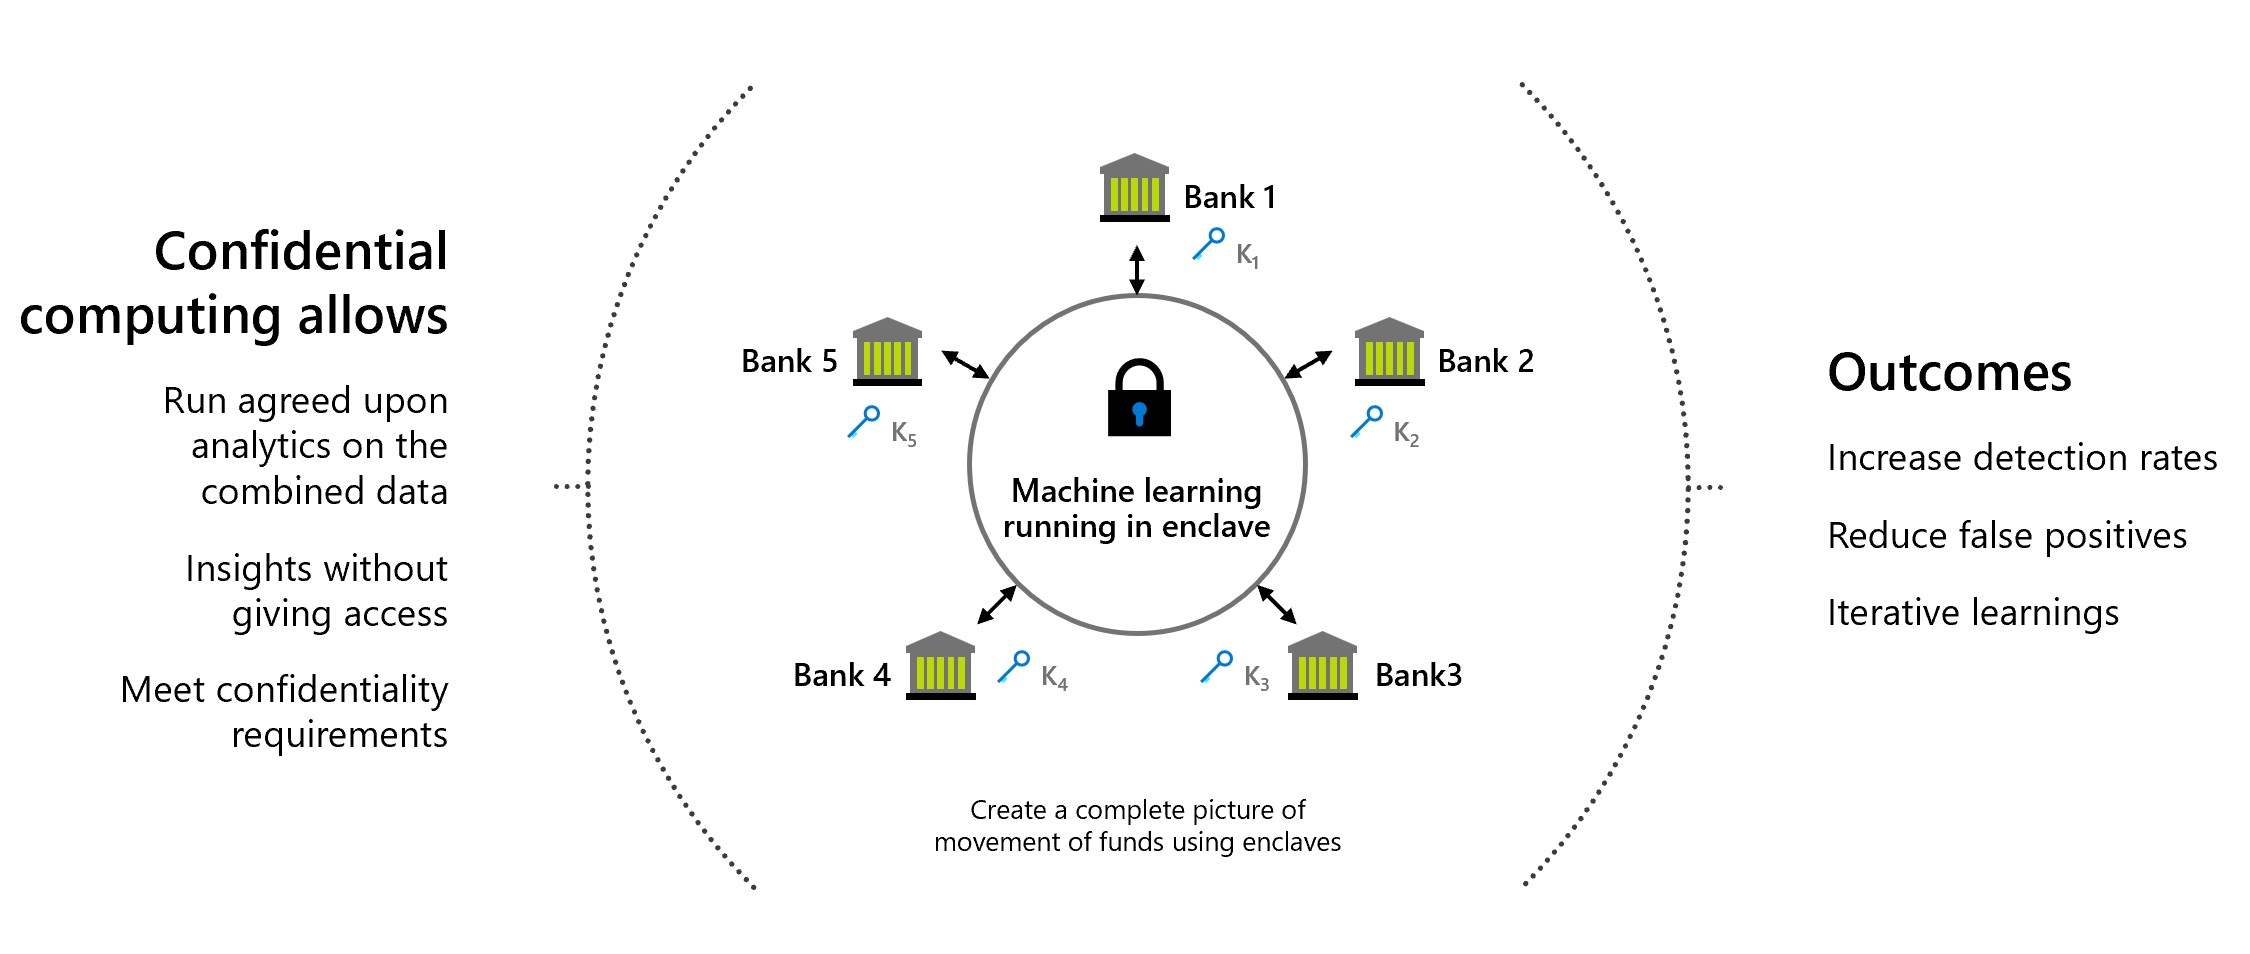 A bankok többrészes adatmegosztásának ábrája, amely a bizalmas számítástechnika által lehetővé teszi az adatáthelyezést.